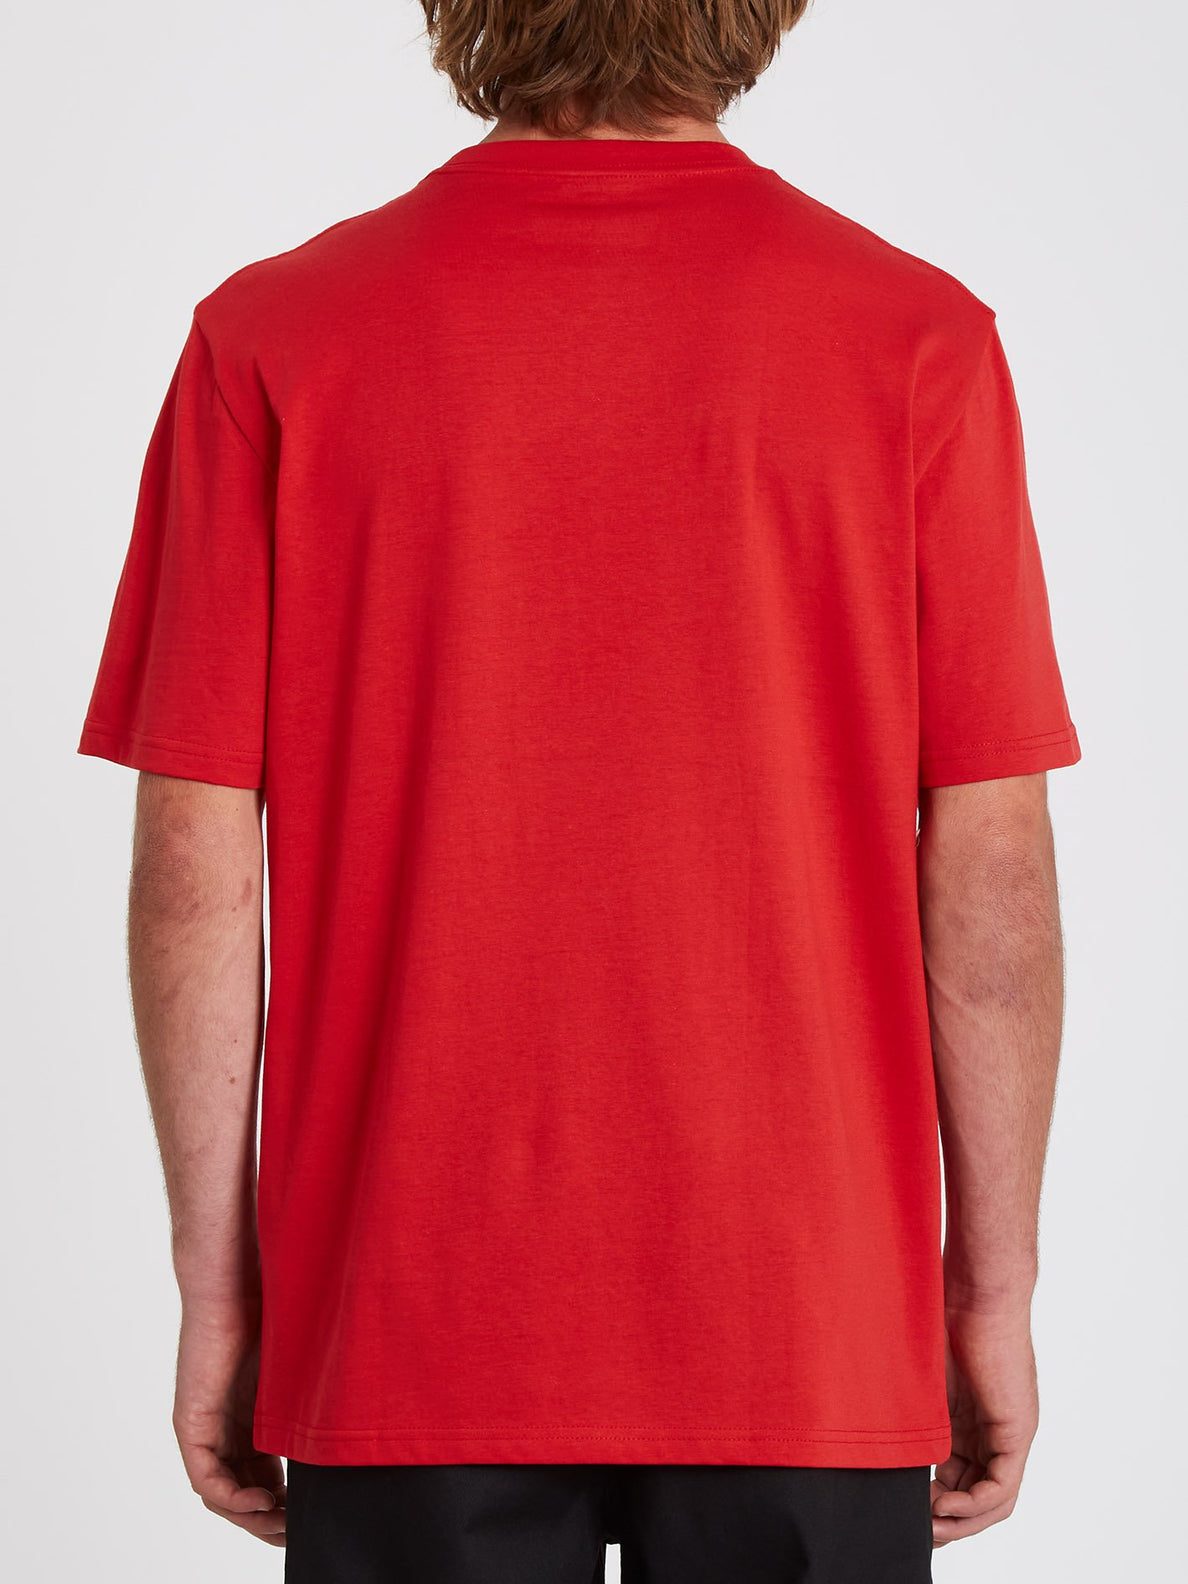 Yewltide Cheer T-shirt - RIBBON RED